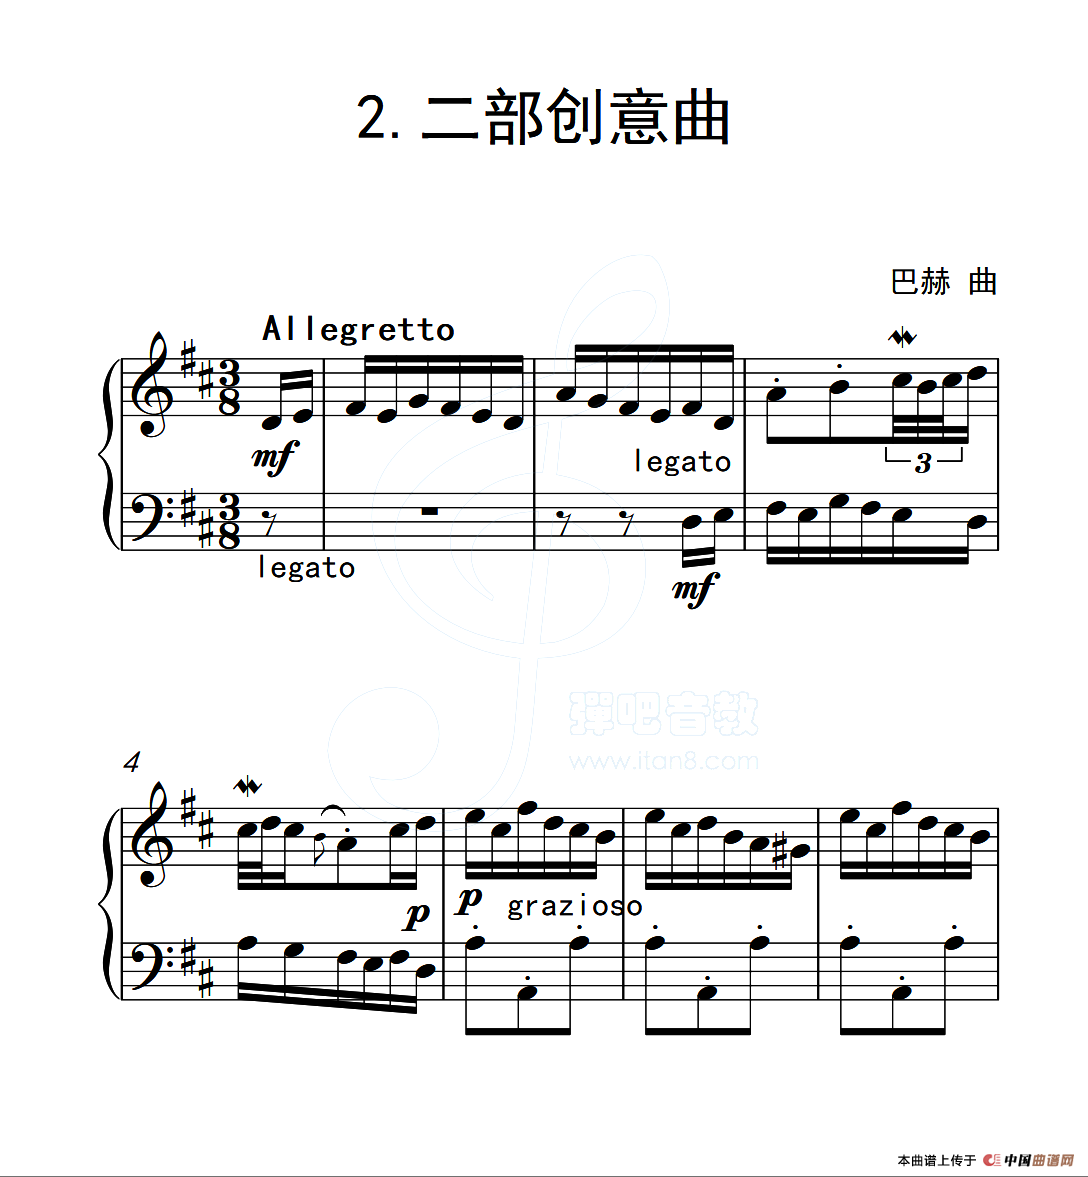 第五级A组 二部创意曲（中国音乐学院钢琴考级作